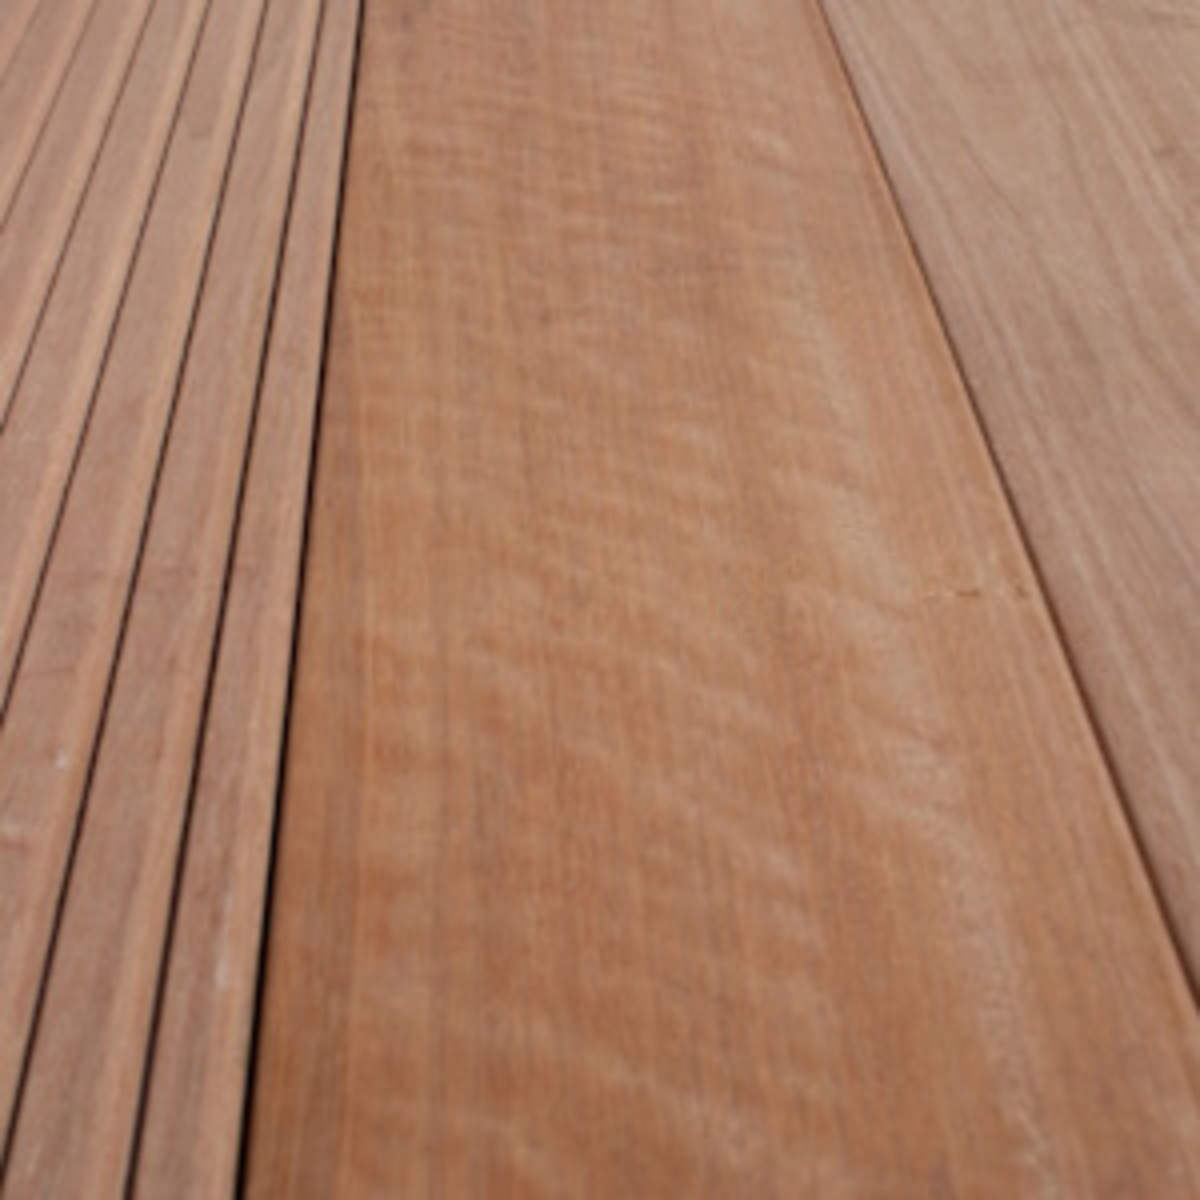 Poteau support bois pour escalier amovible section 9x9cm